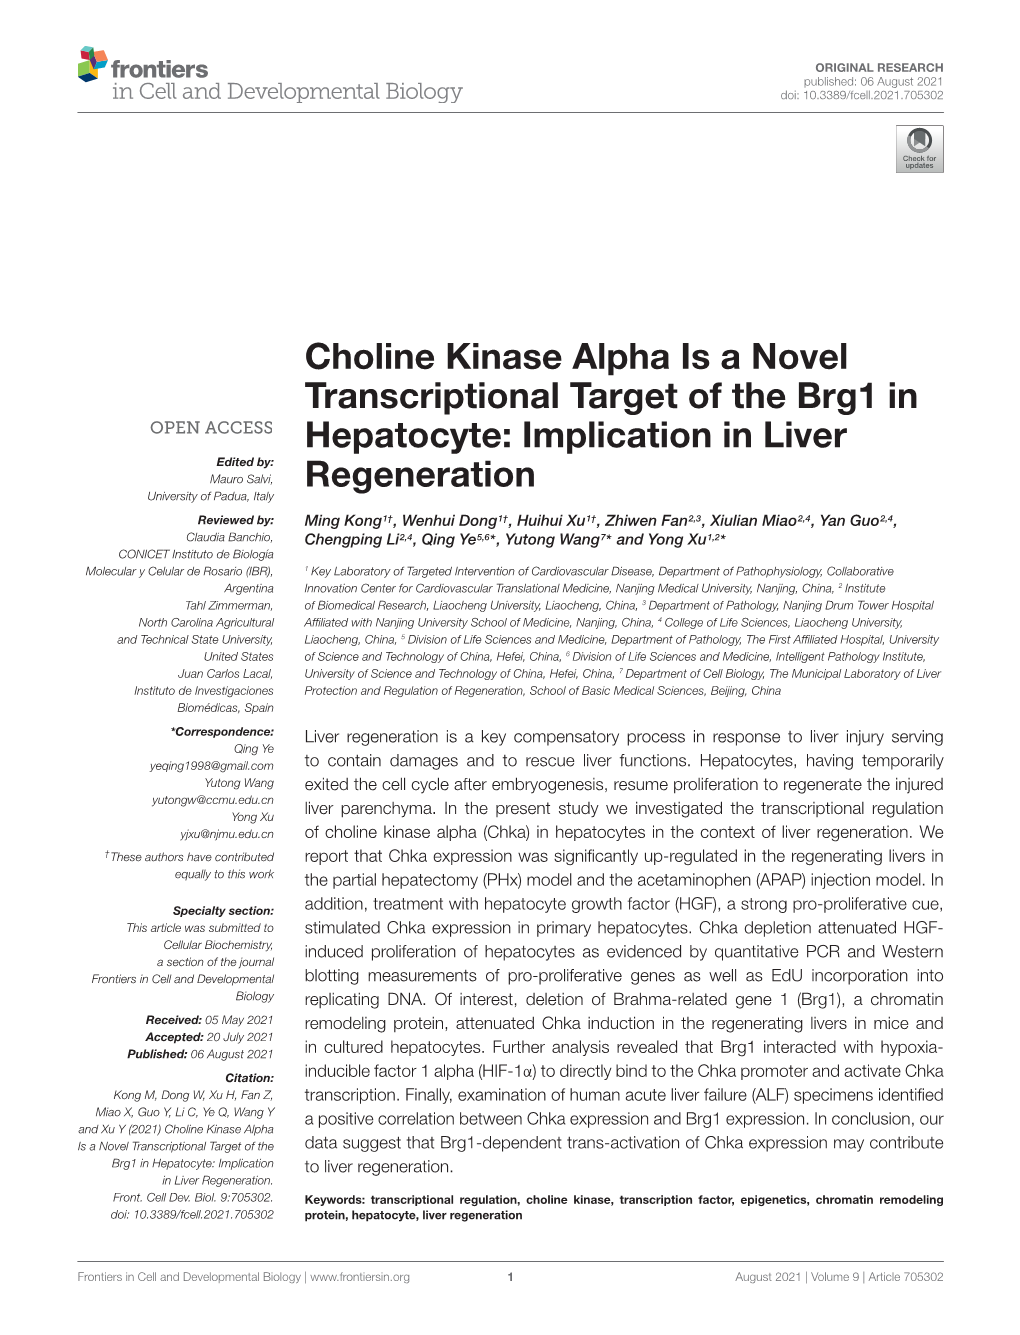 Choline Kinase Alpha Is a Novel Transcriptional Target of the Brg1 in Hepatocyte: Implication in Liver Regeneration